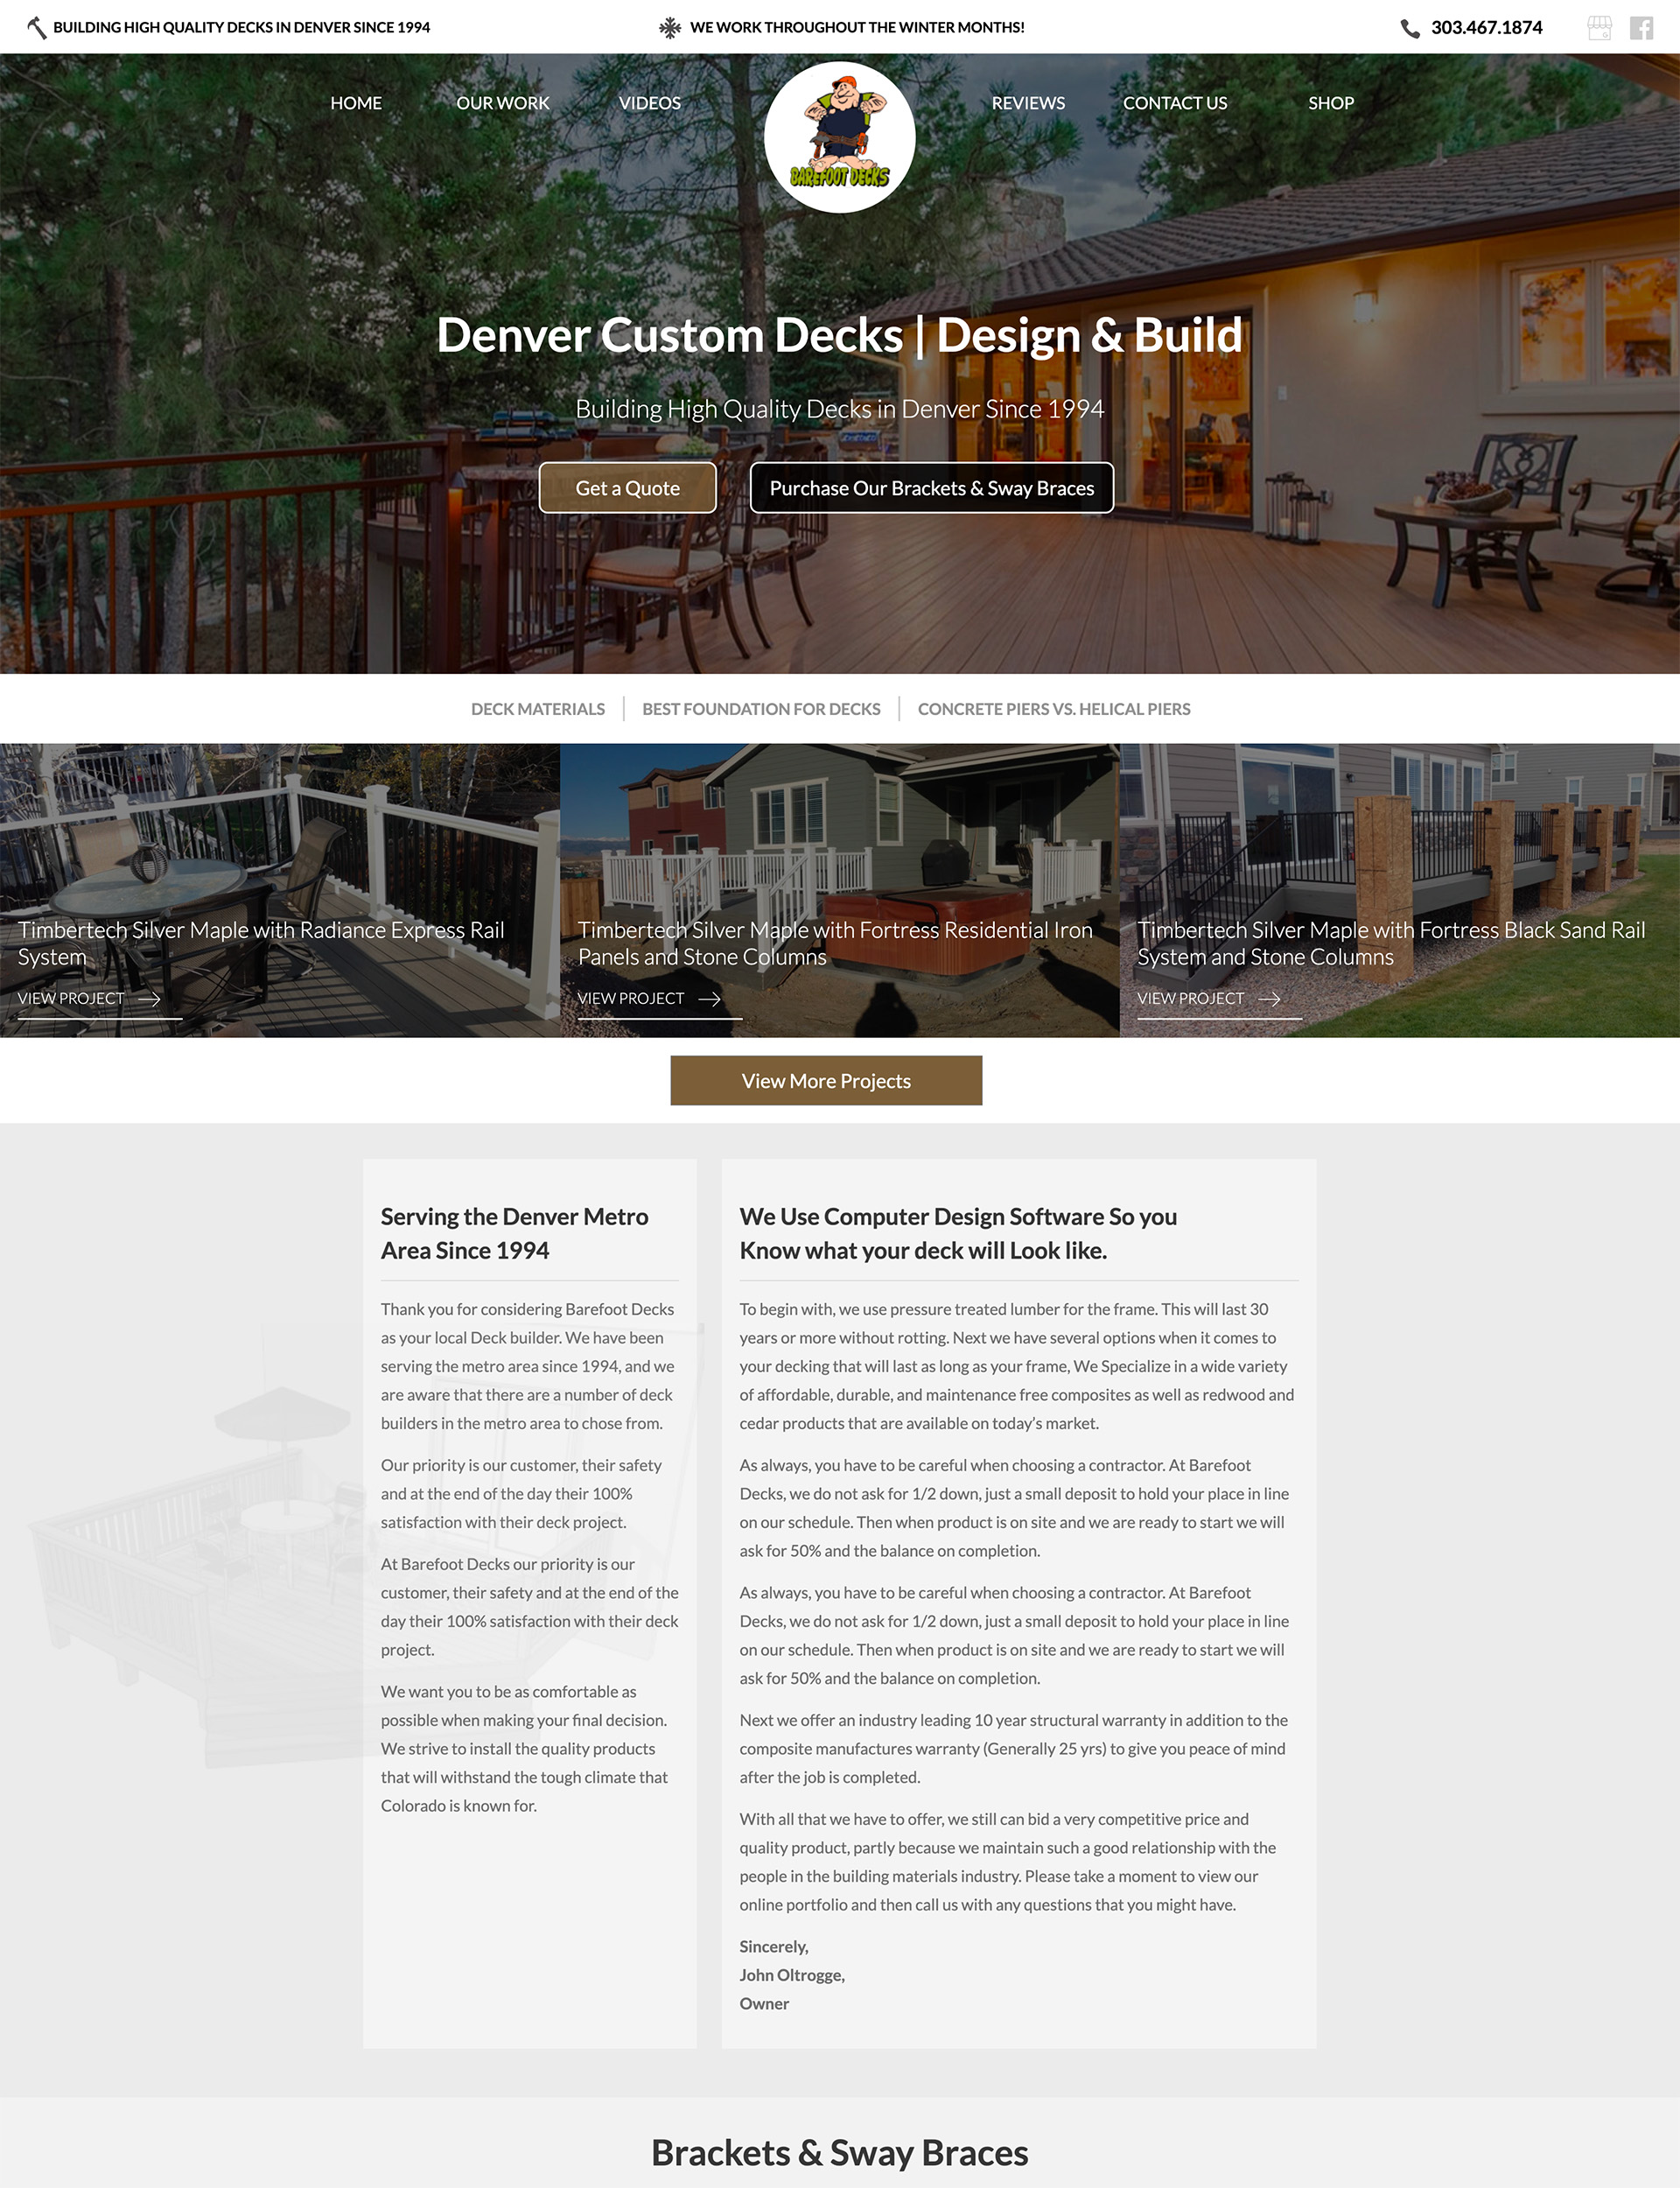 Web Design for Deck Builders & Contractors